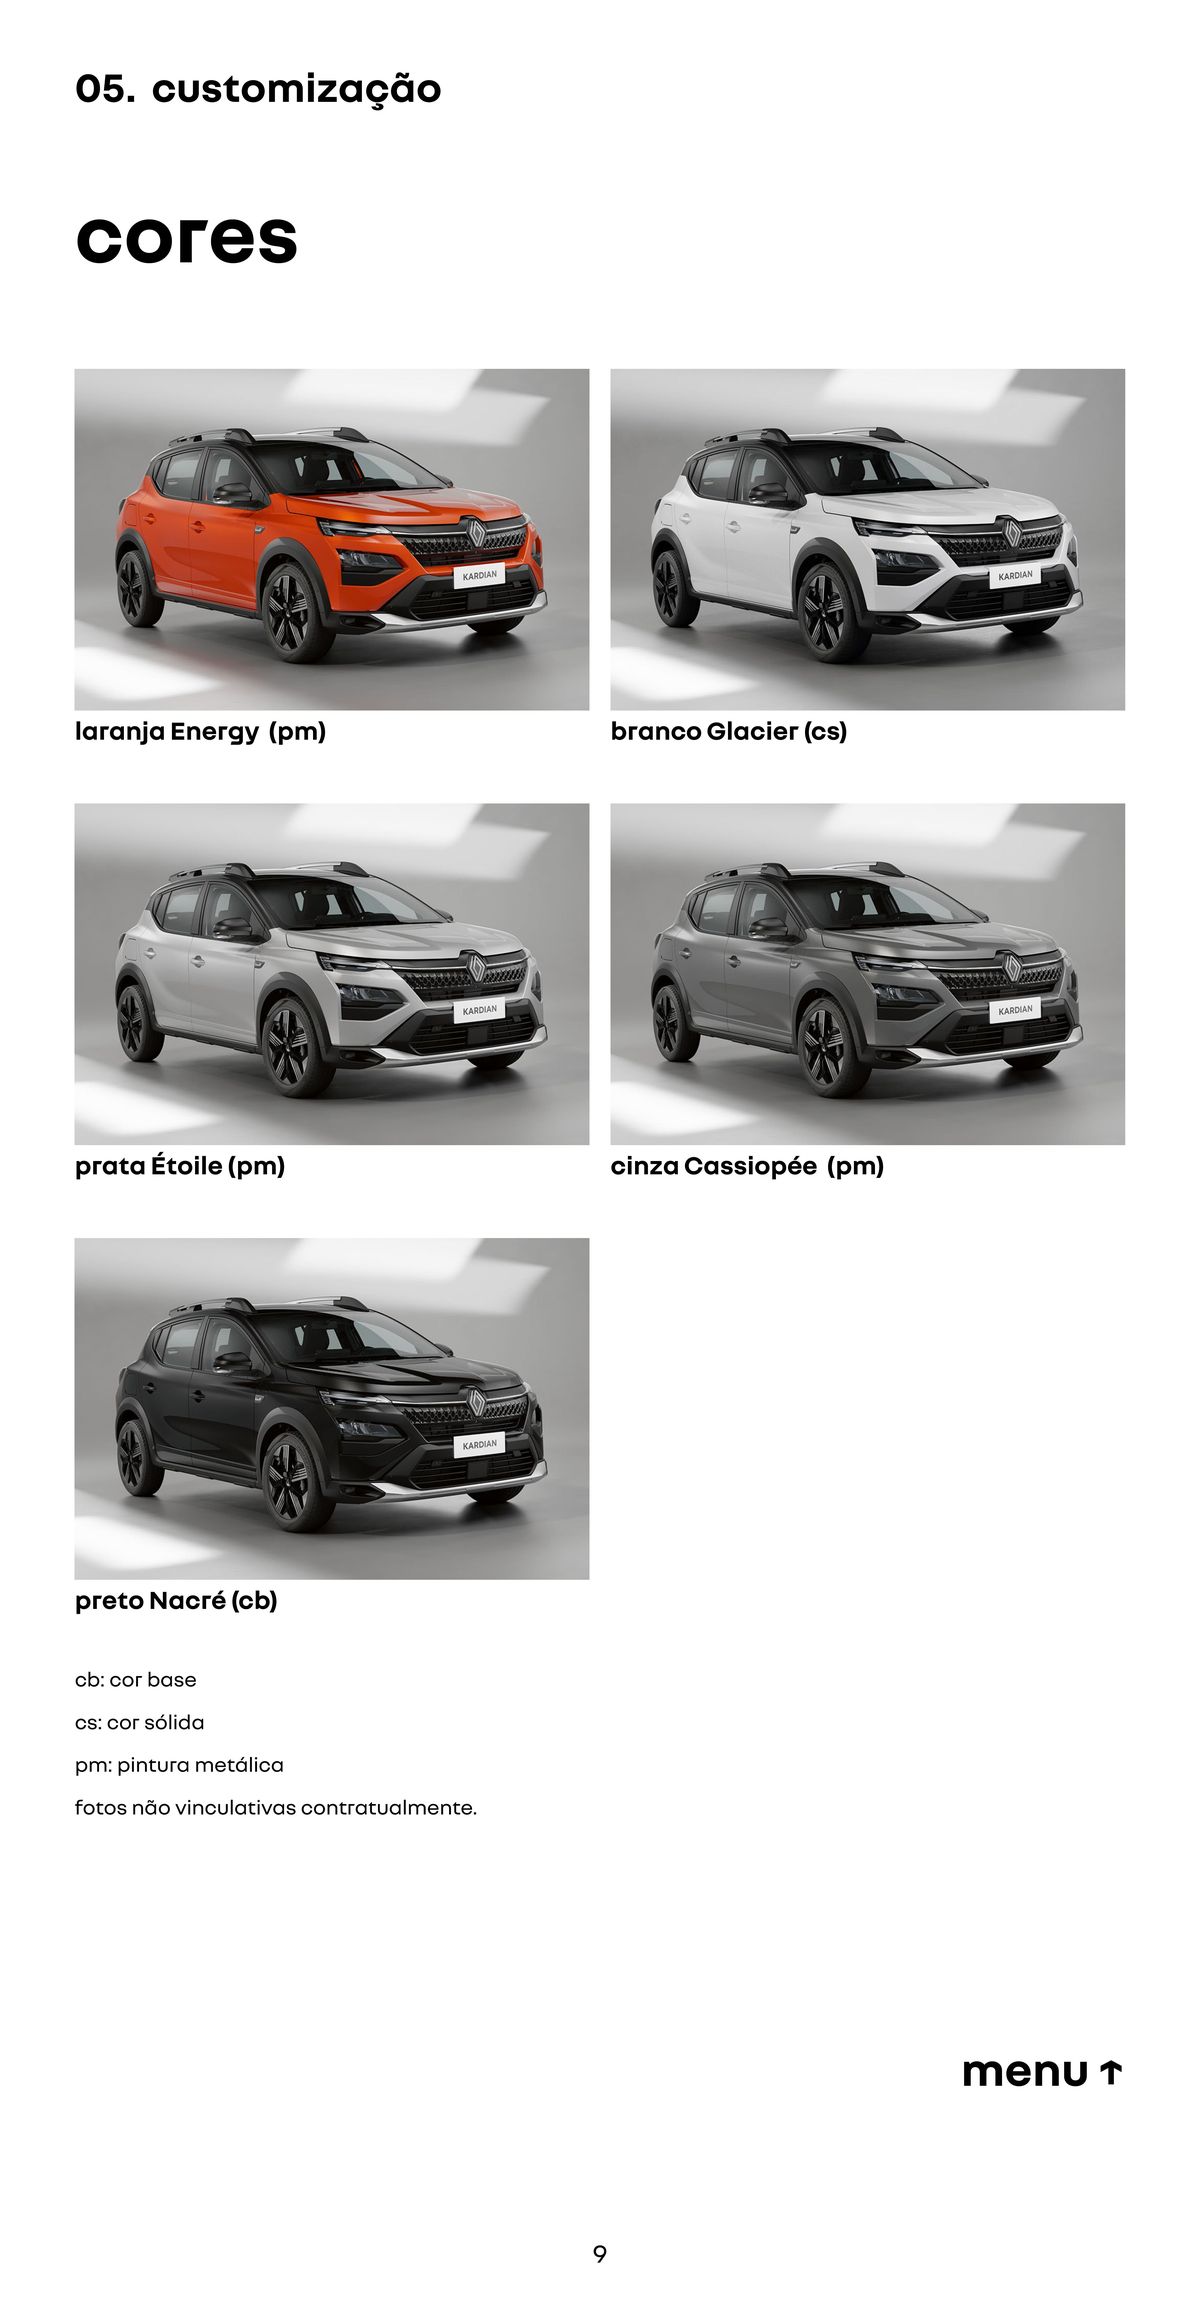 Promoção de customização de cores para veículos Renault